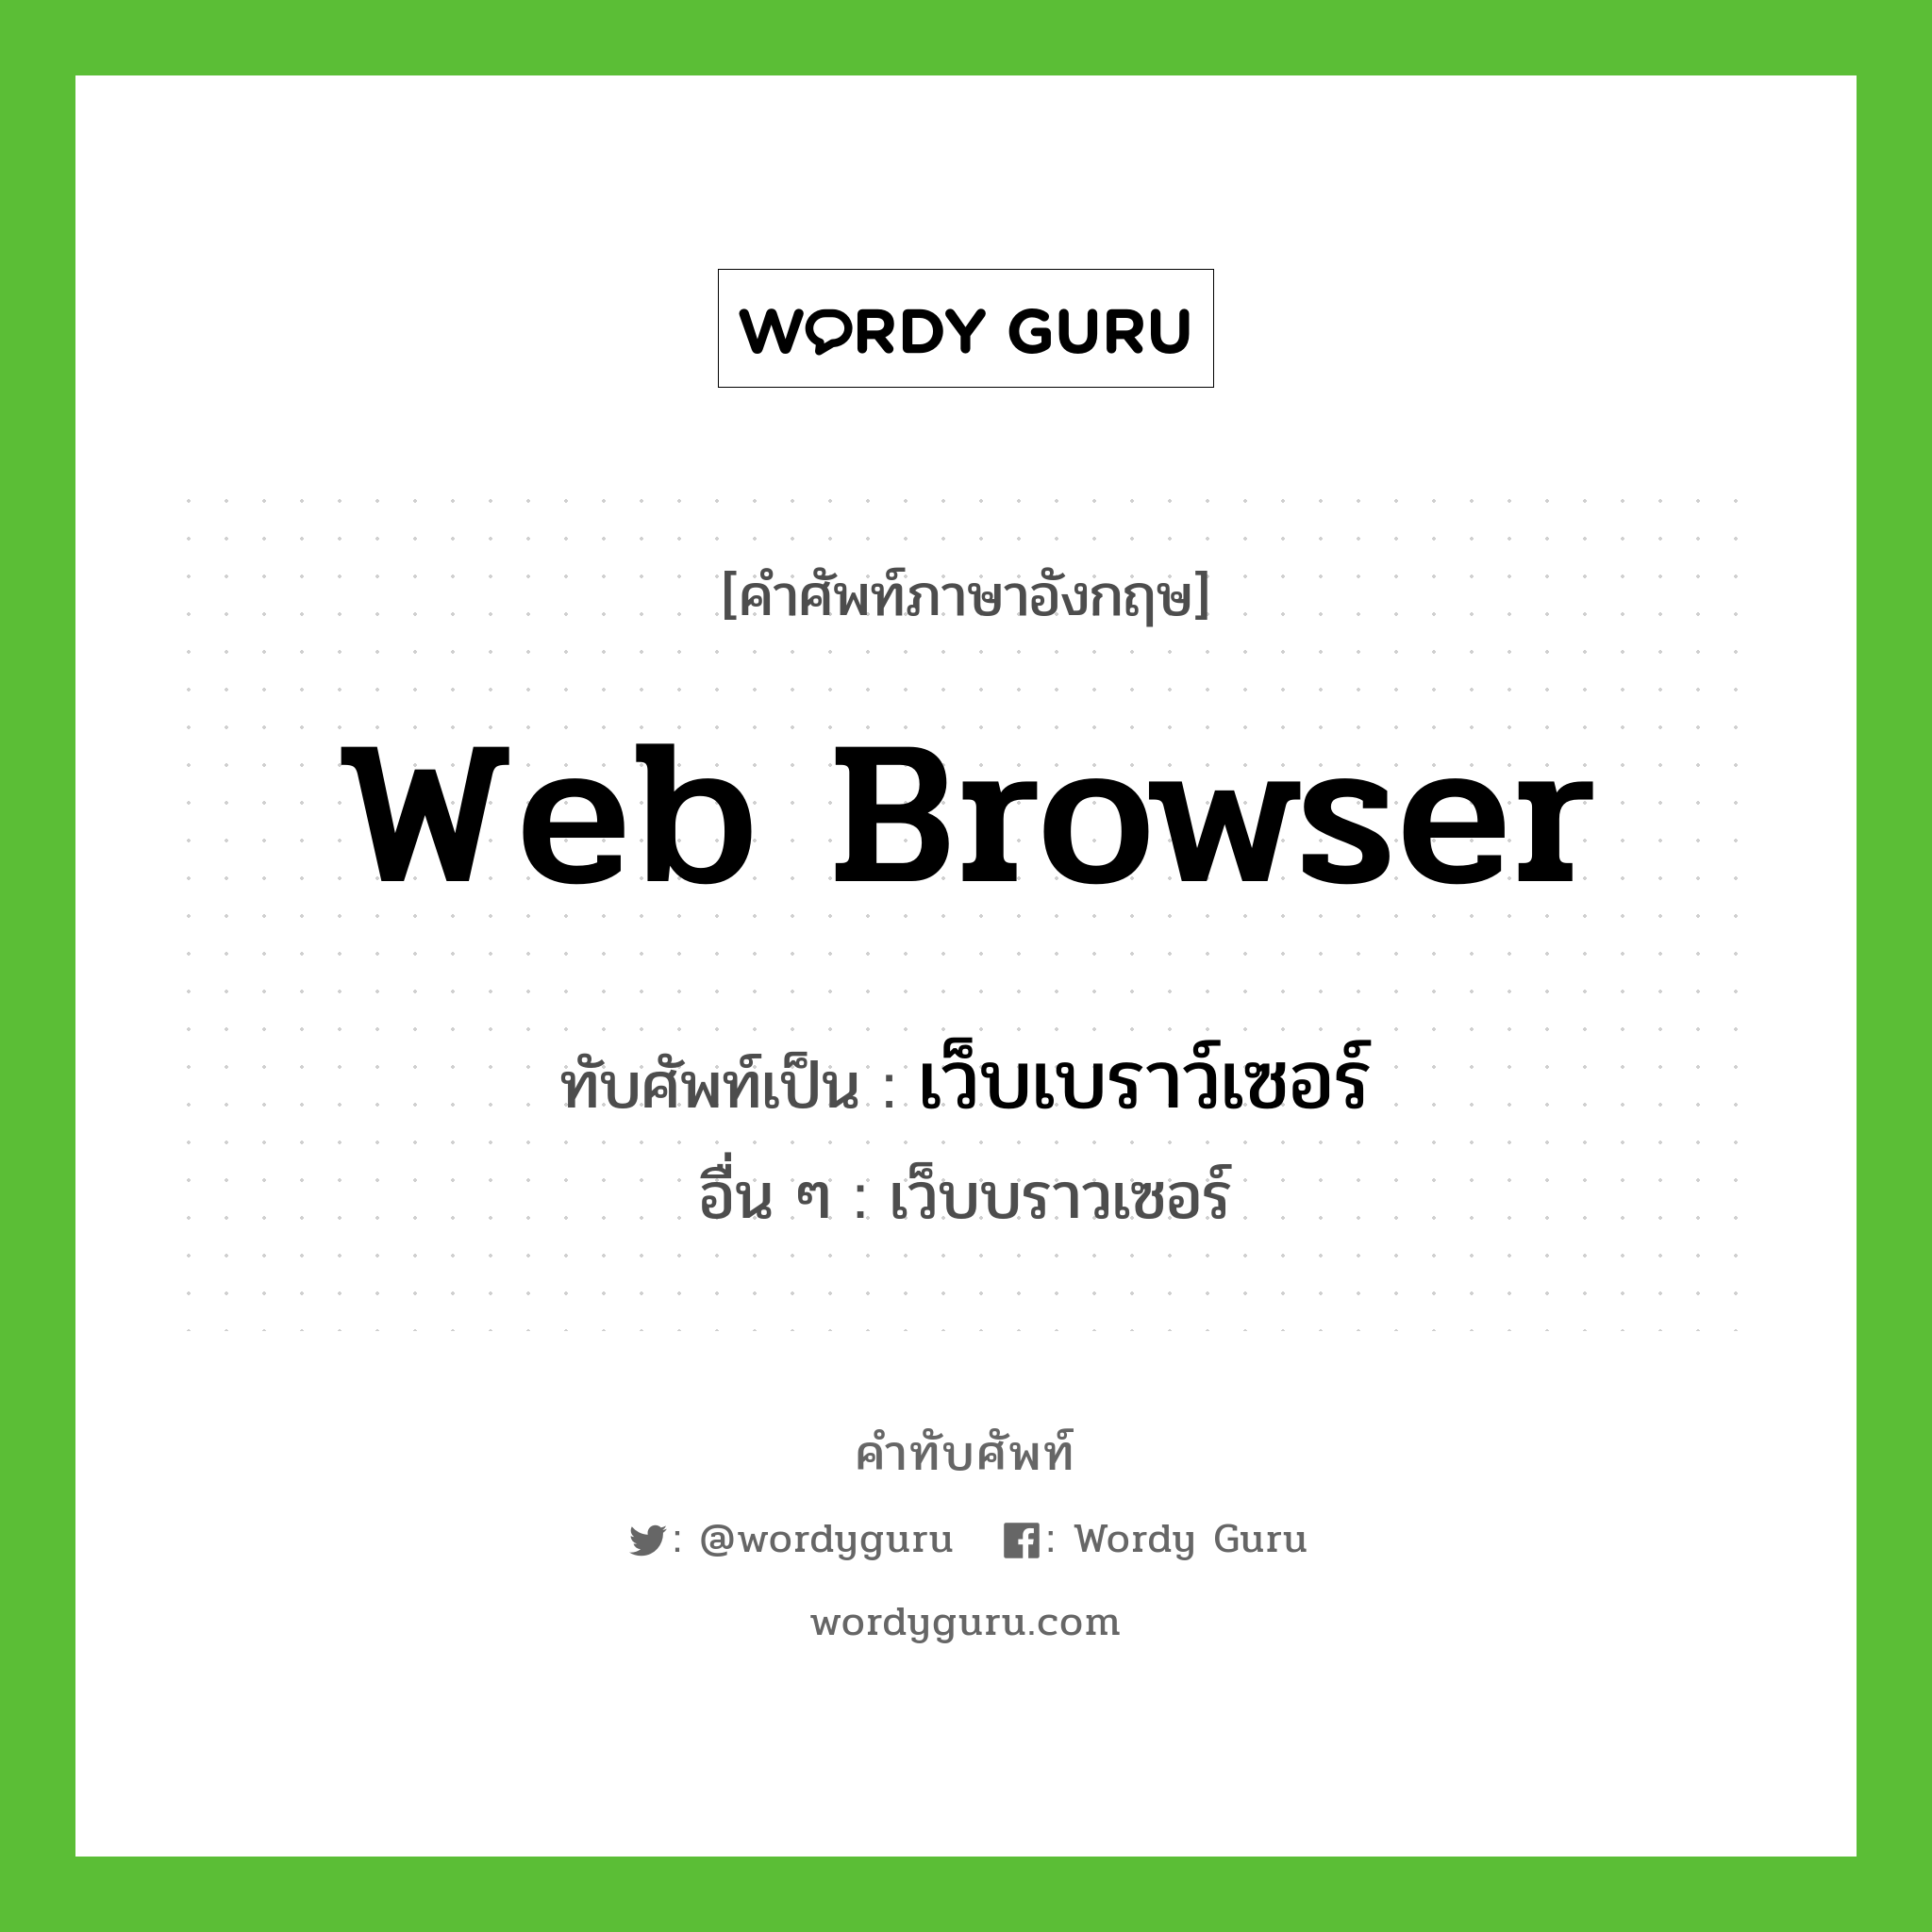 เว็บเบราว์เซอร์ เขียนอย่างไร?, คำศัพท์ภาษาอังกฤษ เว็บเบราว์เซอร์ ทับศัพท์เป็น web browser อื่น ๆ เว็บบราวเซอร์